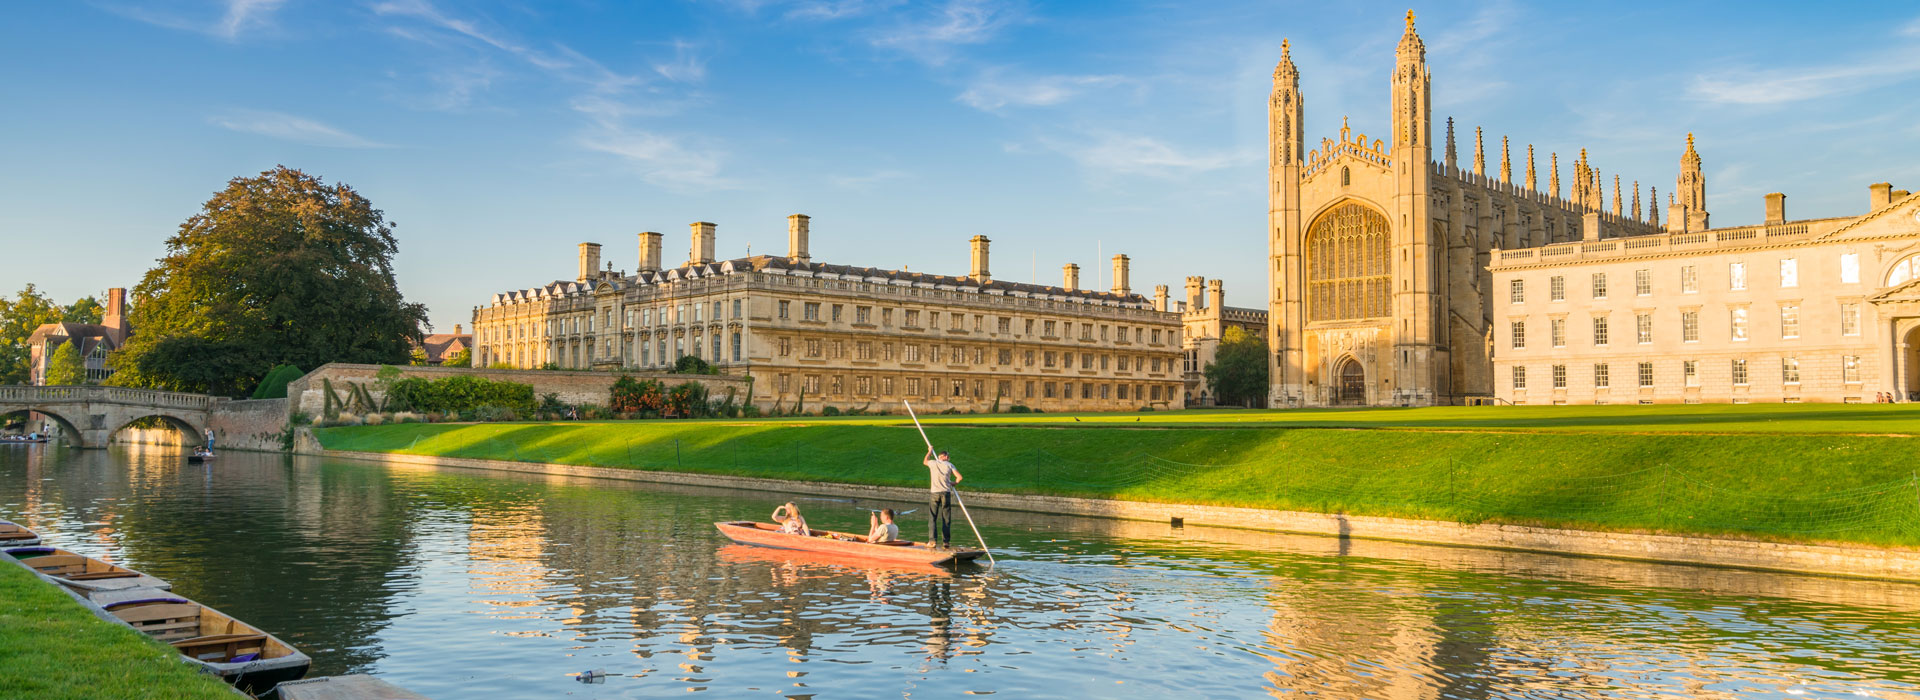 A river outside a UK University - Cambridge